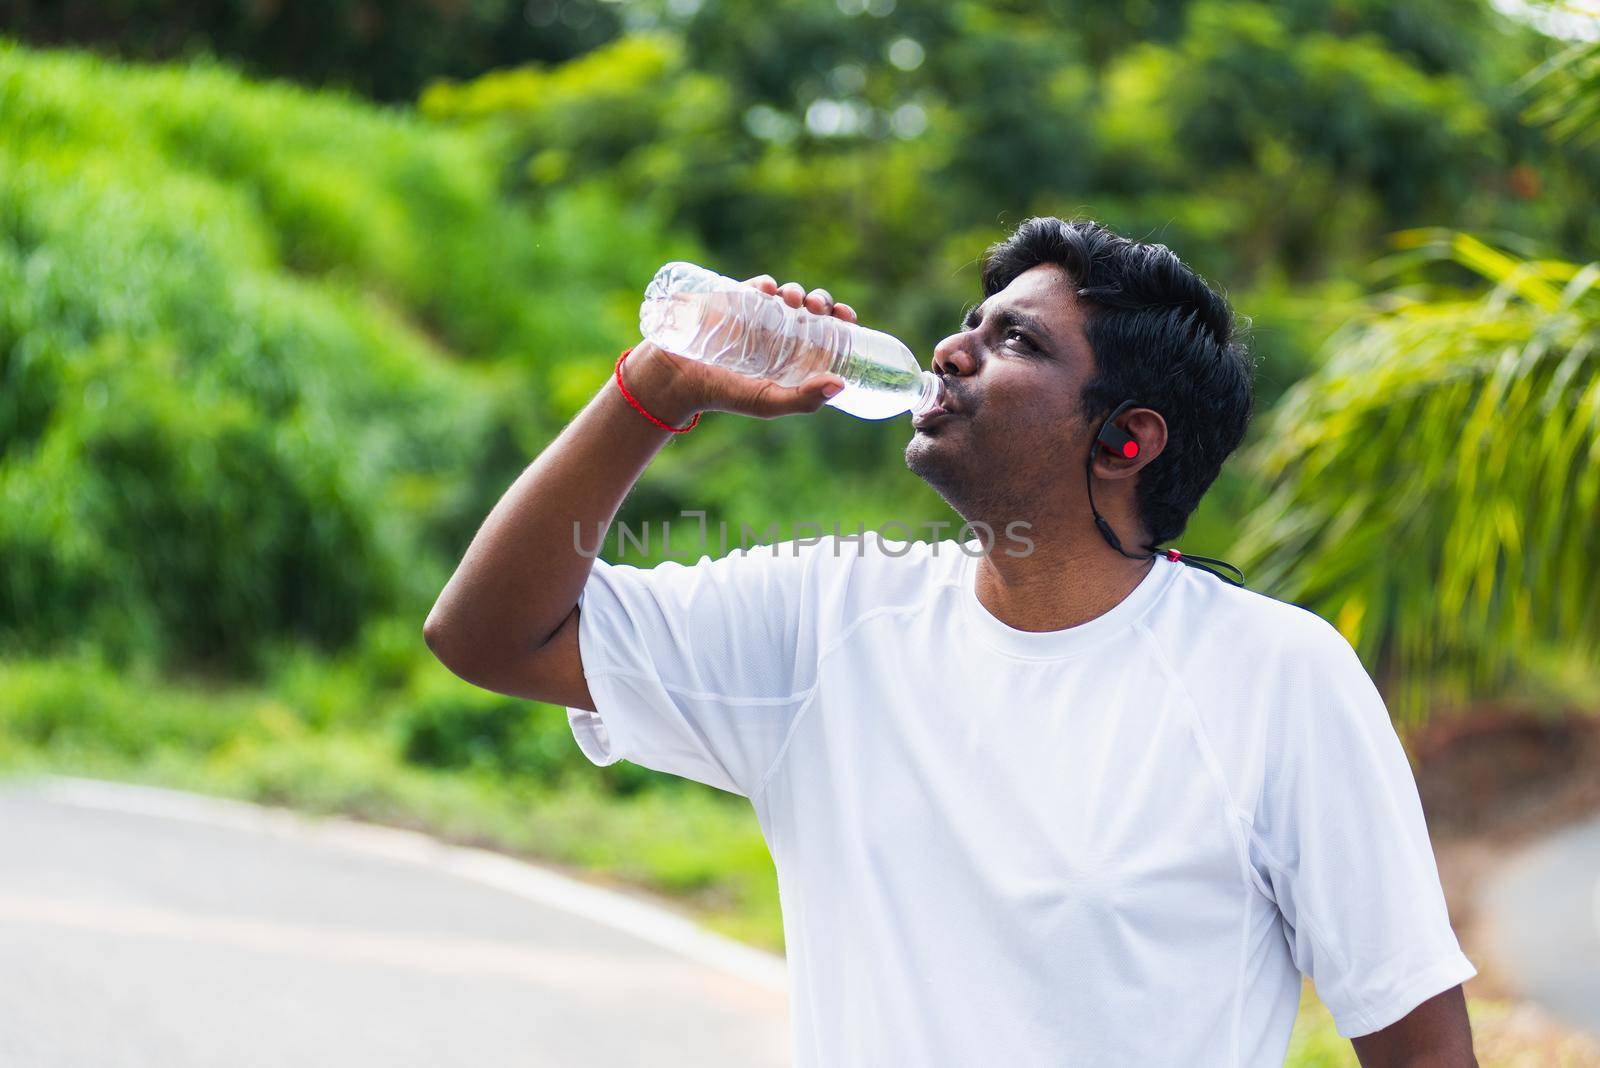 sport runner black man wear athlete headphones he drinking water from a bottle by Sorapop